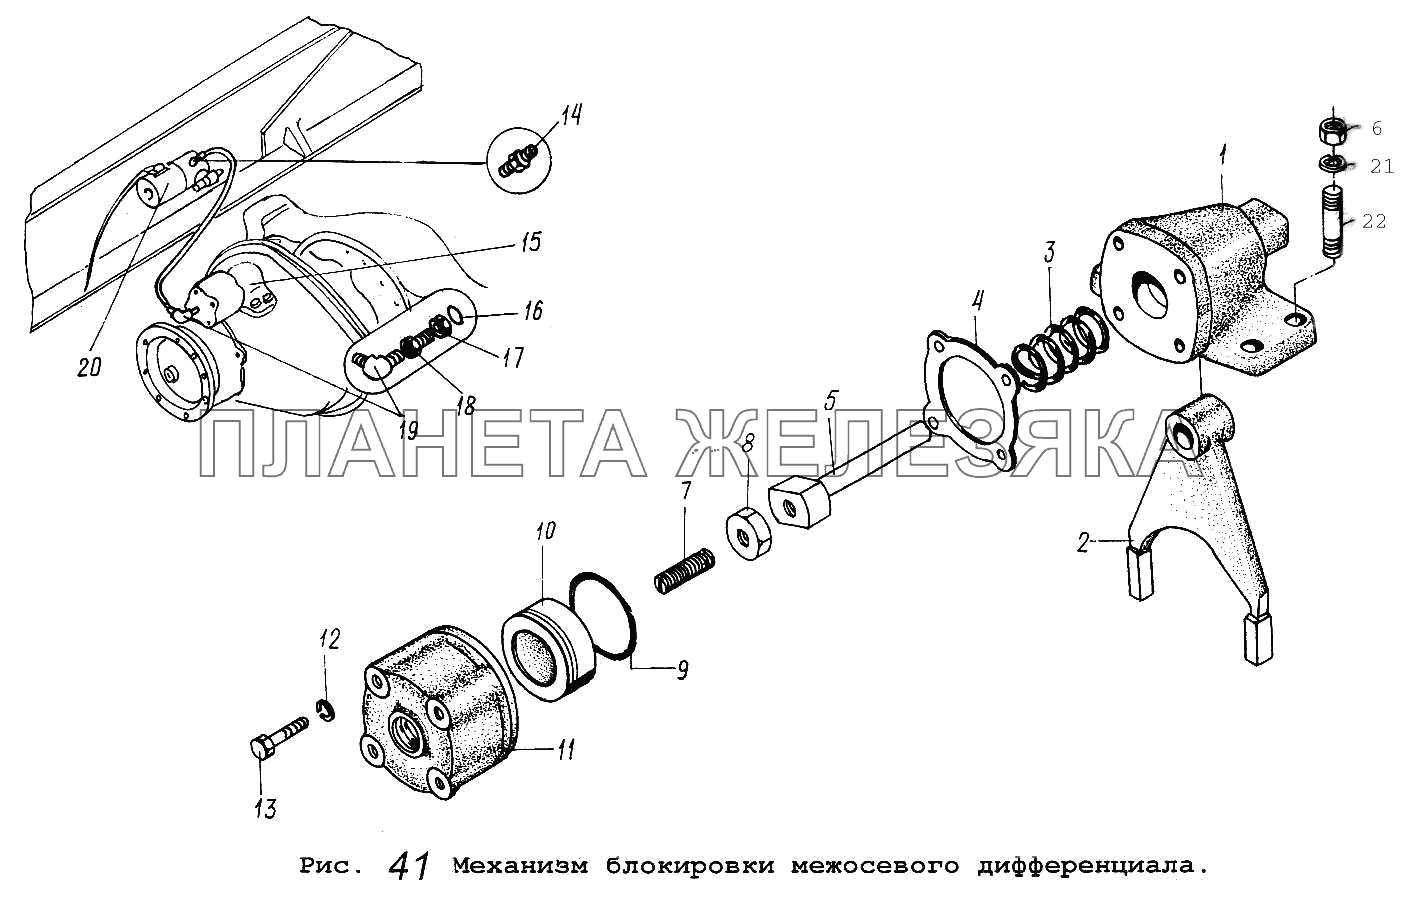 Механизм блокировки межосевого дифференциала МАЗ-5516